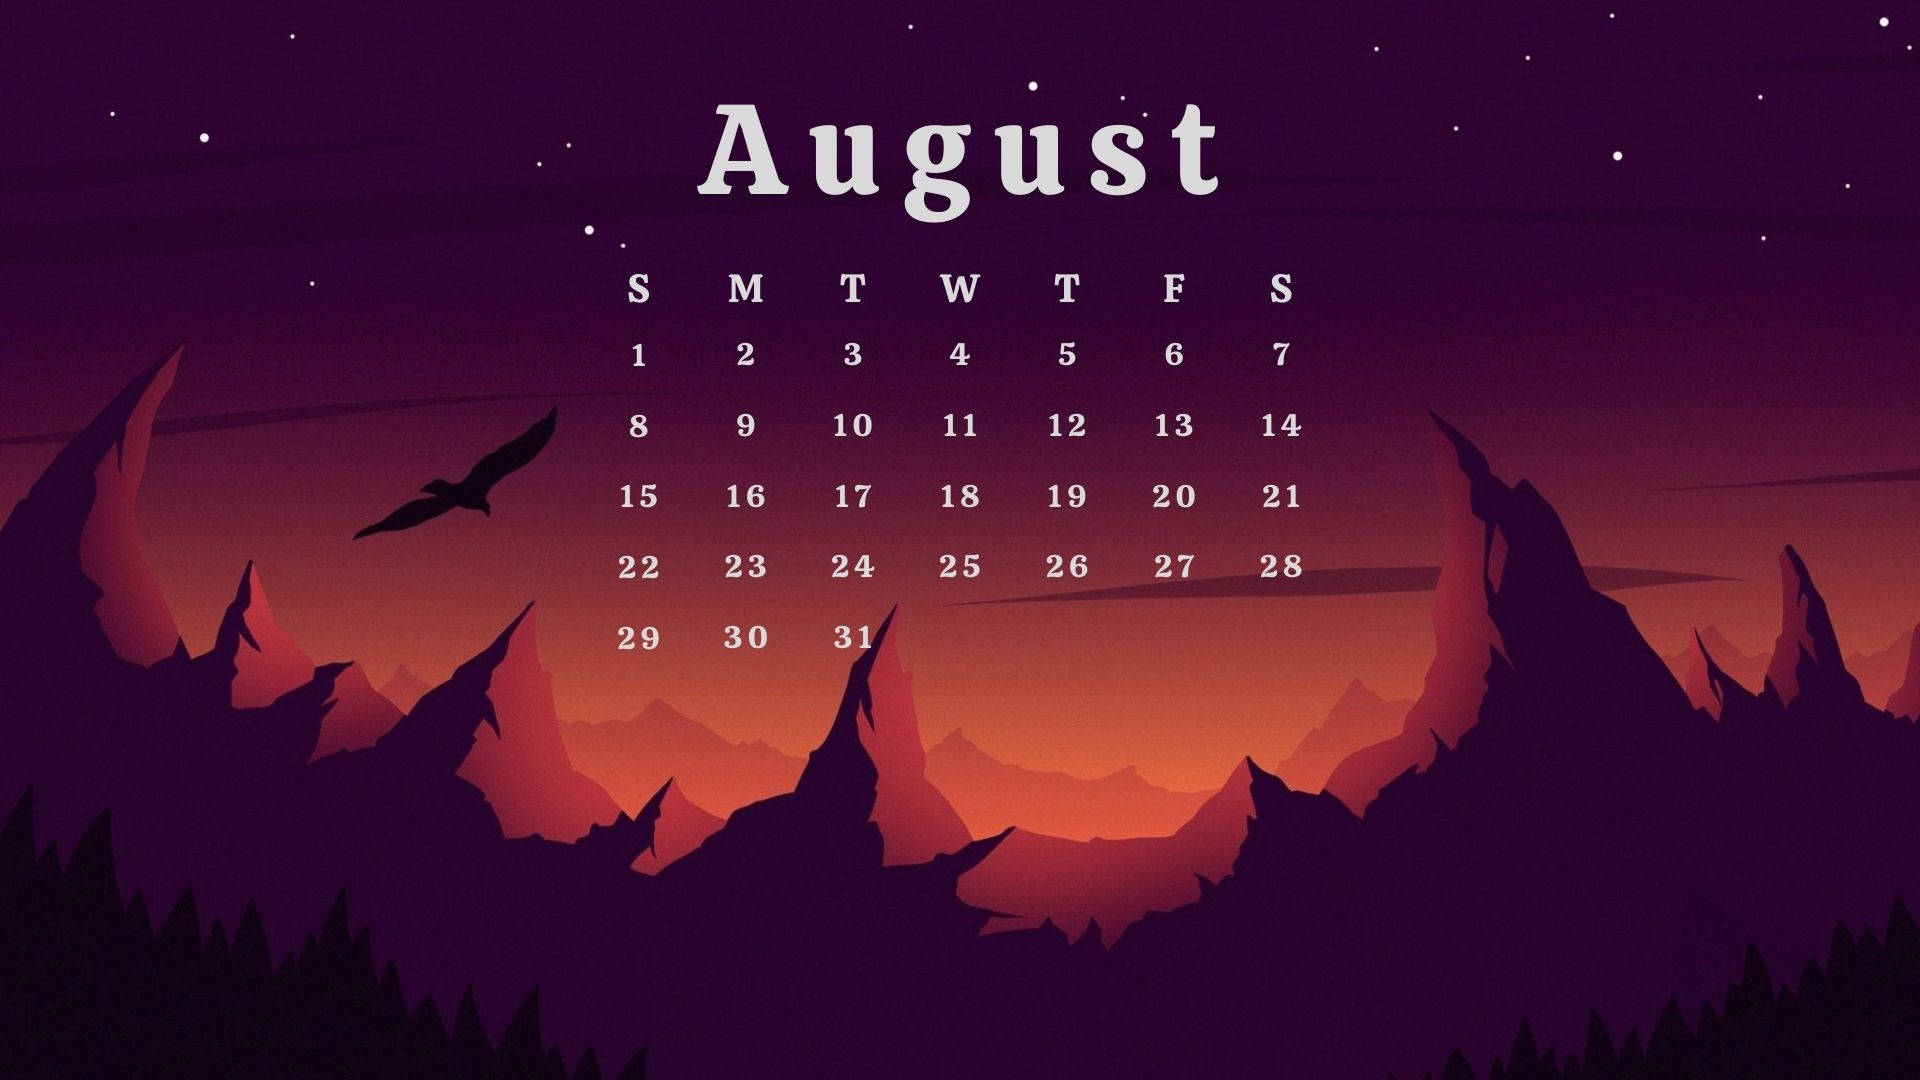 Starry Night August 2021 Calendar